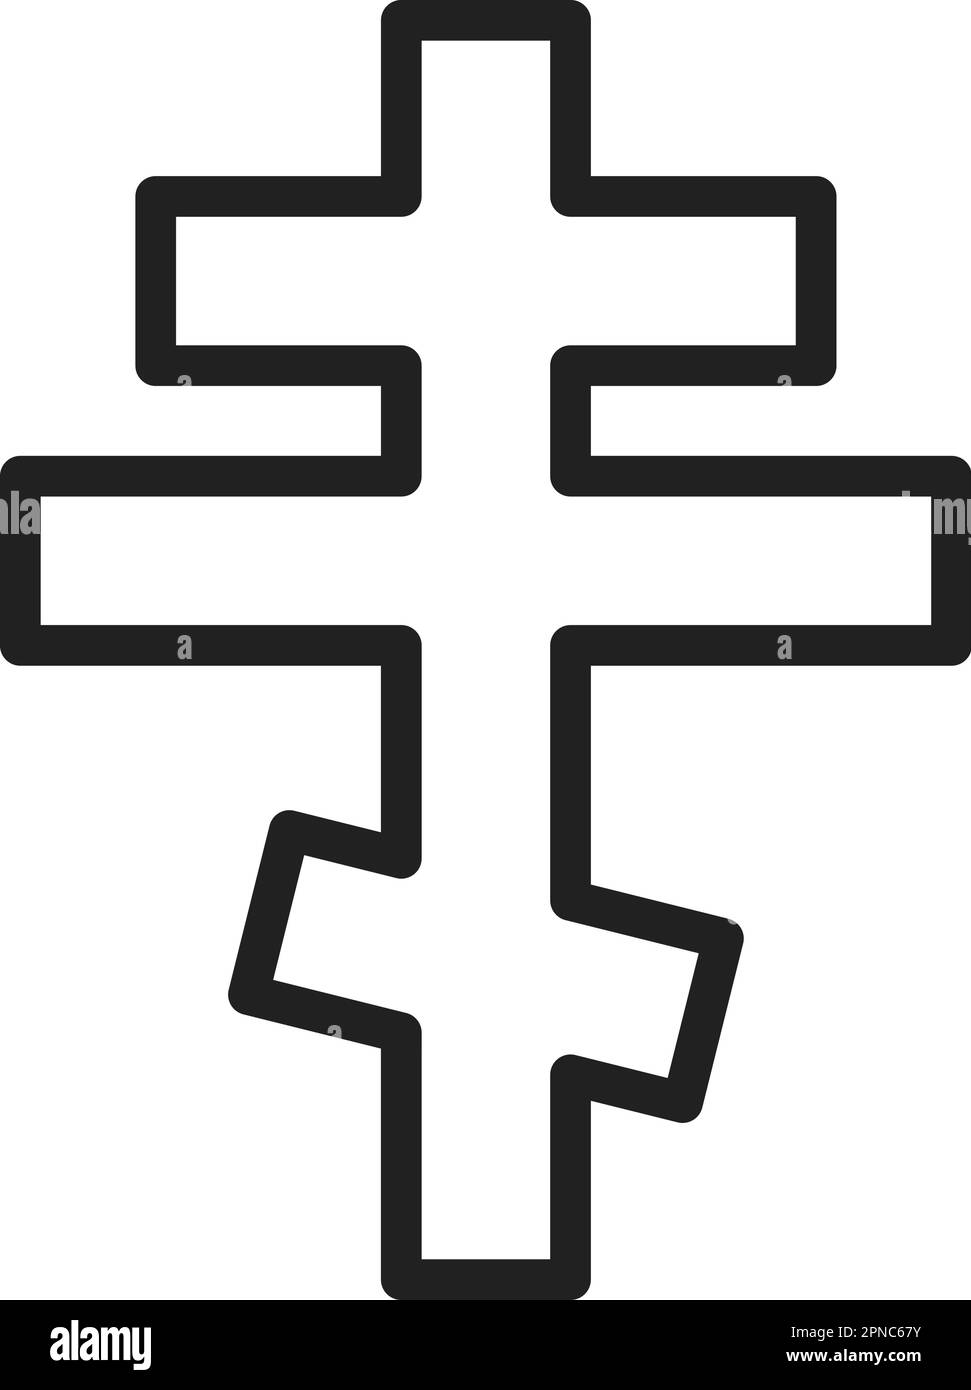 Orthodoxes Kreuzsymbol-Vektorbild. Geeignet für mobile Apps, Web-Apps und Printmedien. Stock Vektor